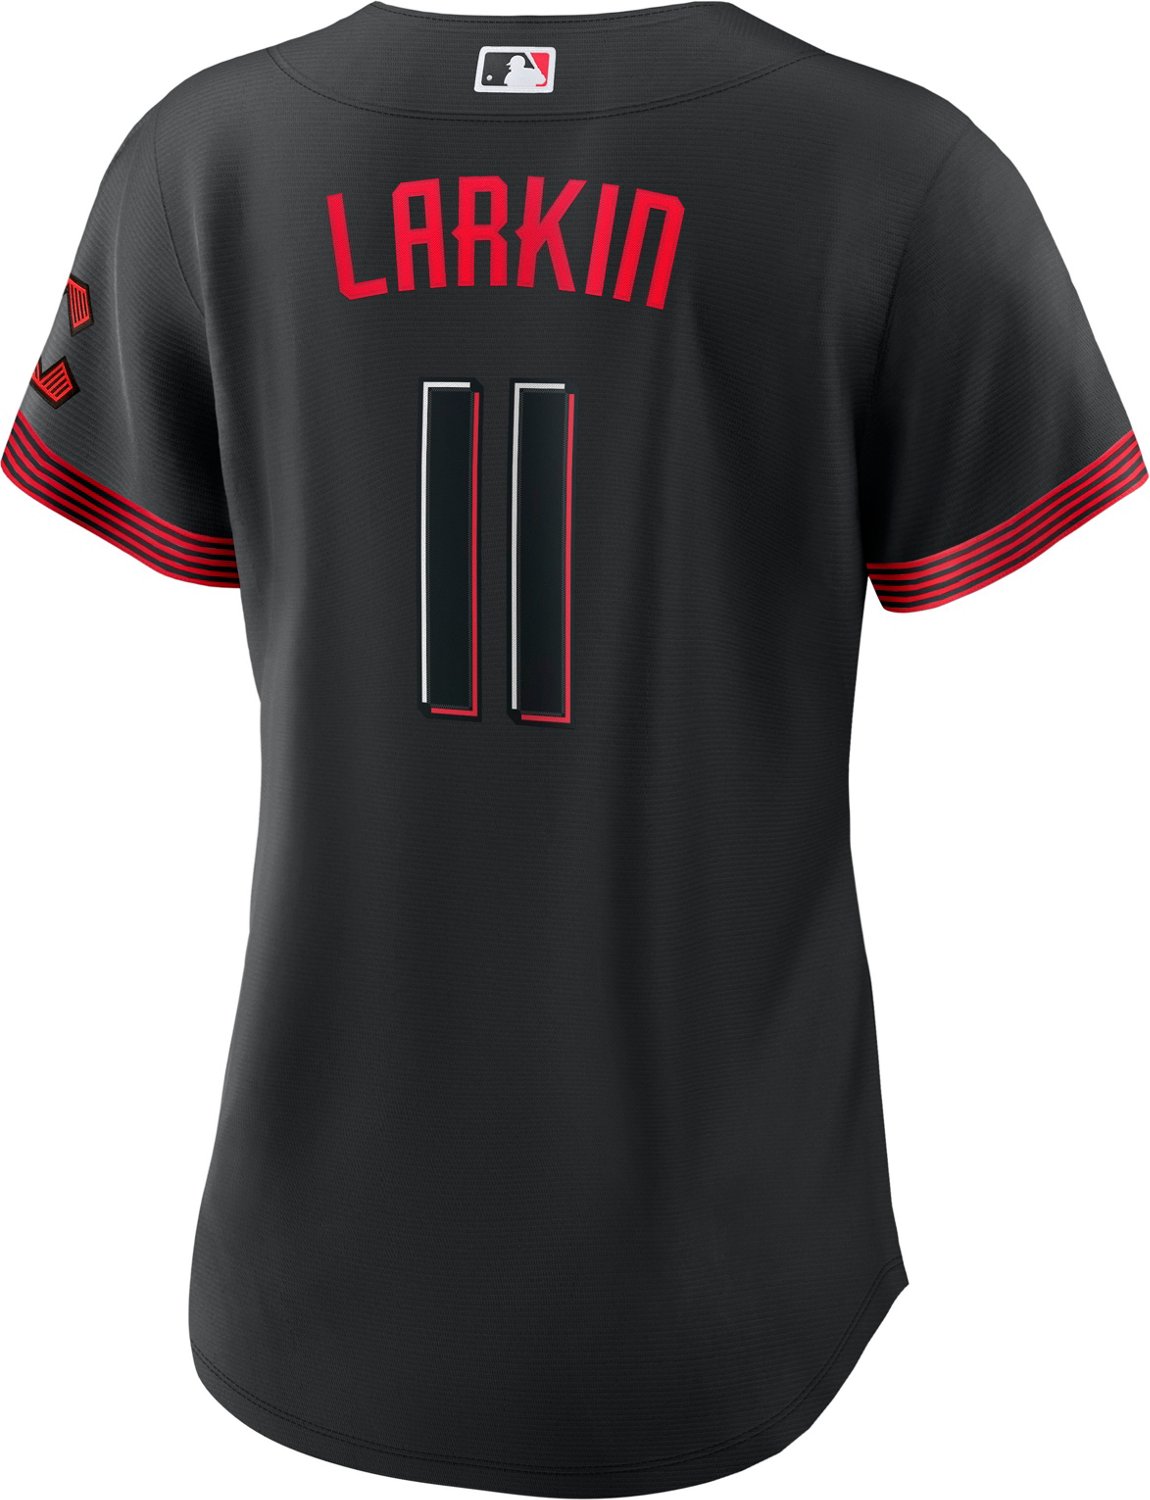 Nike Women's Cincinnati Reds Barry Larkin #11 City Connect Replica